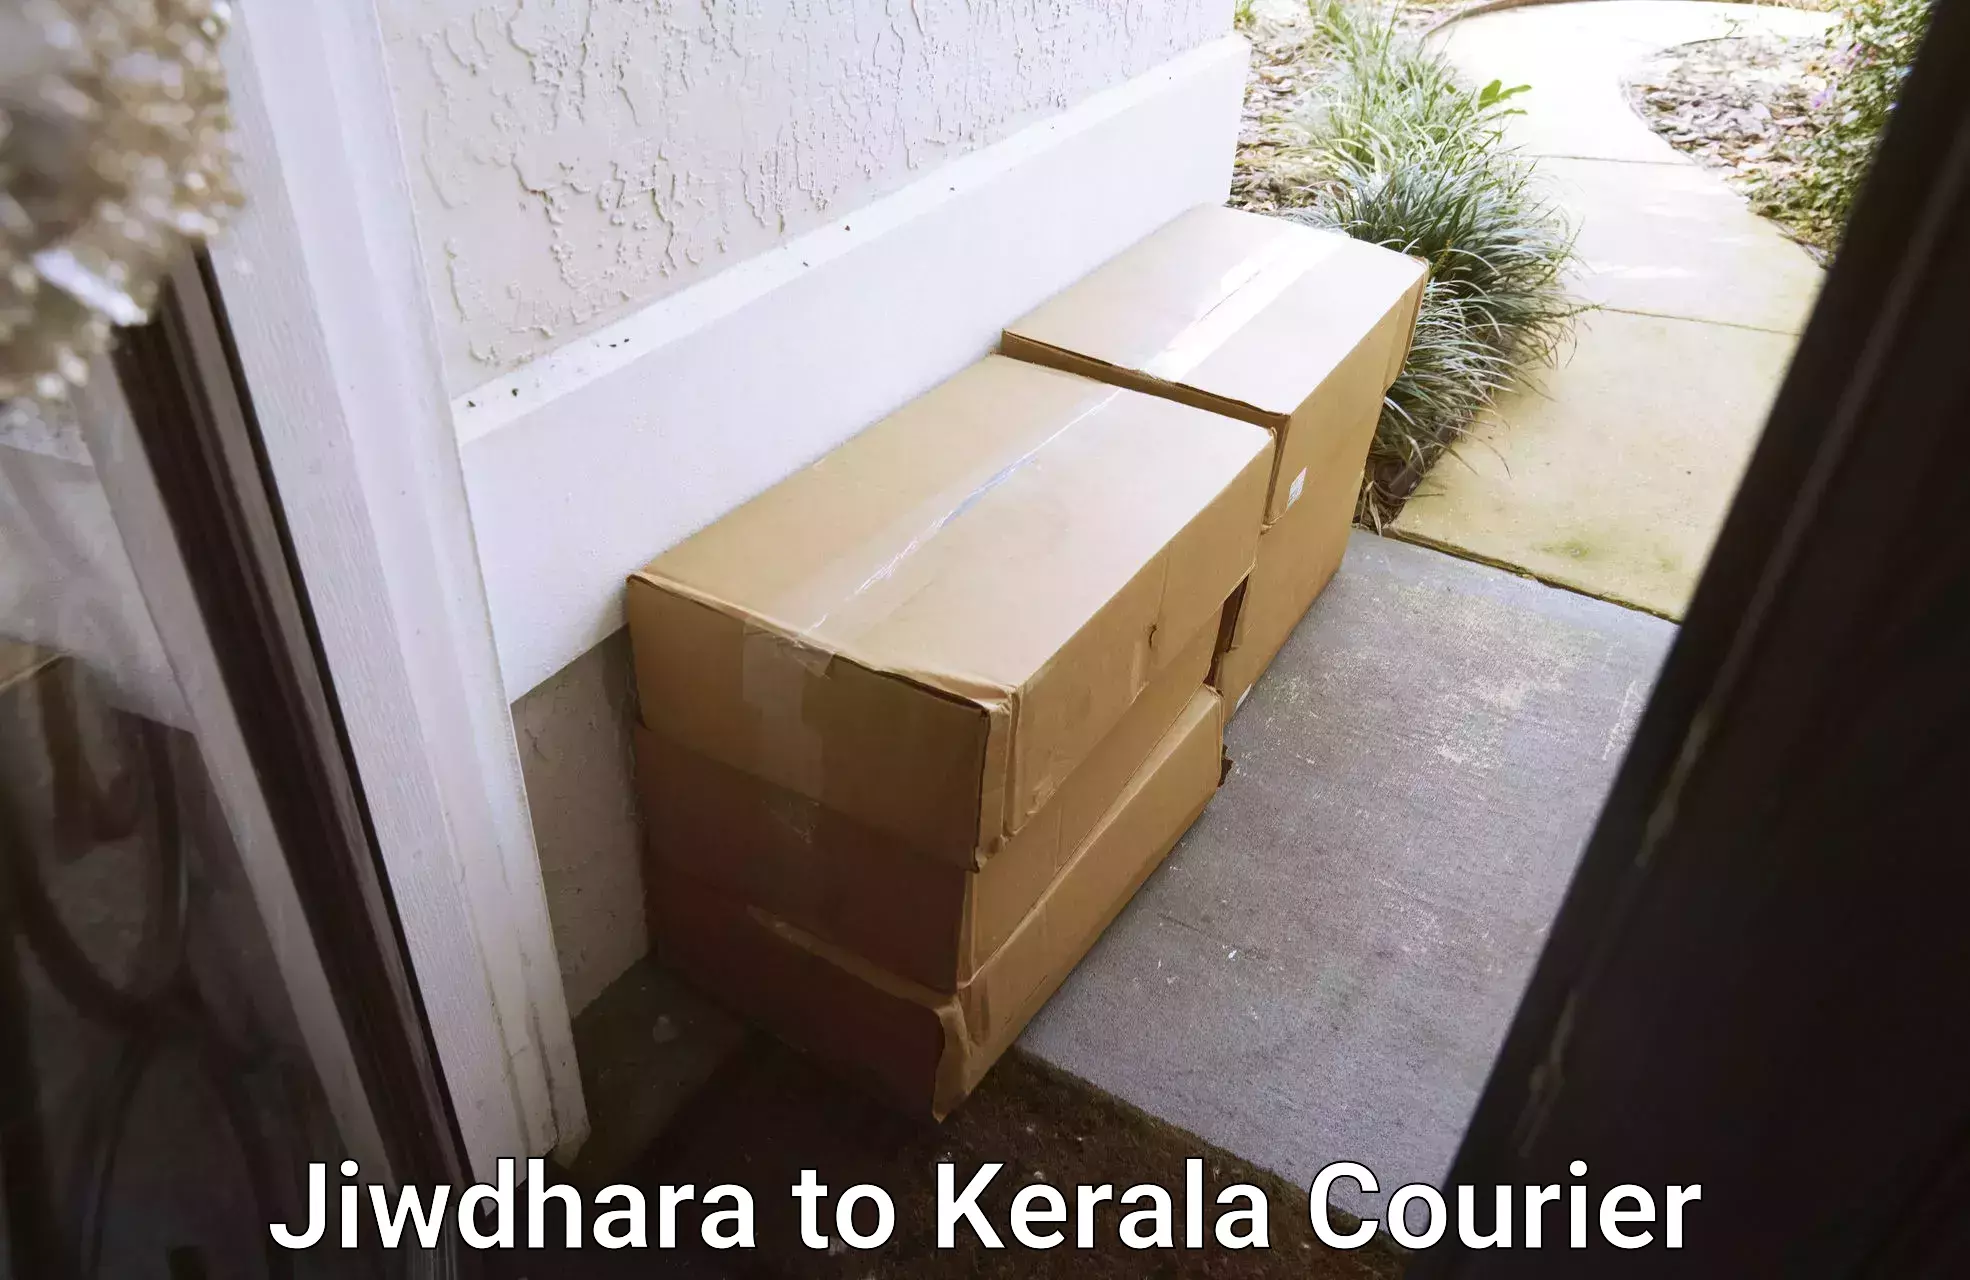 Residential moving experts in Jiwdhara to Kerala